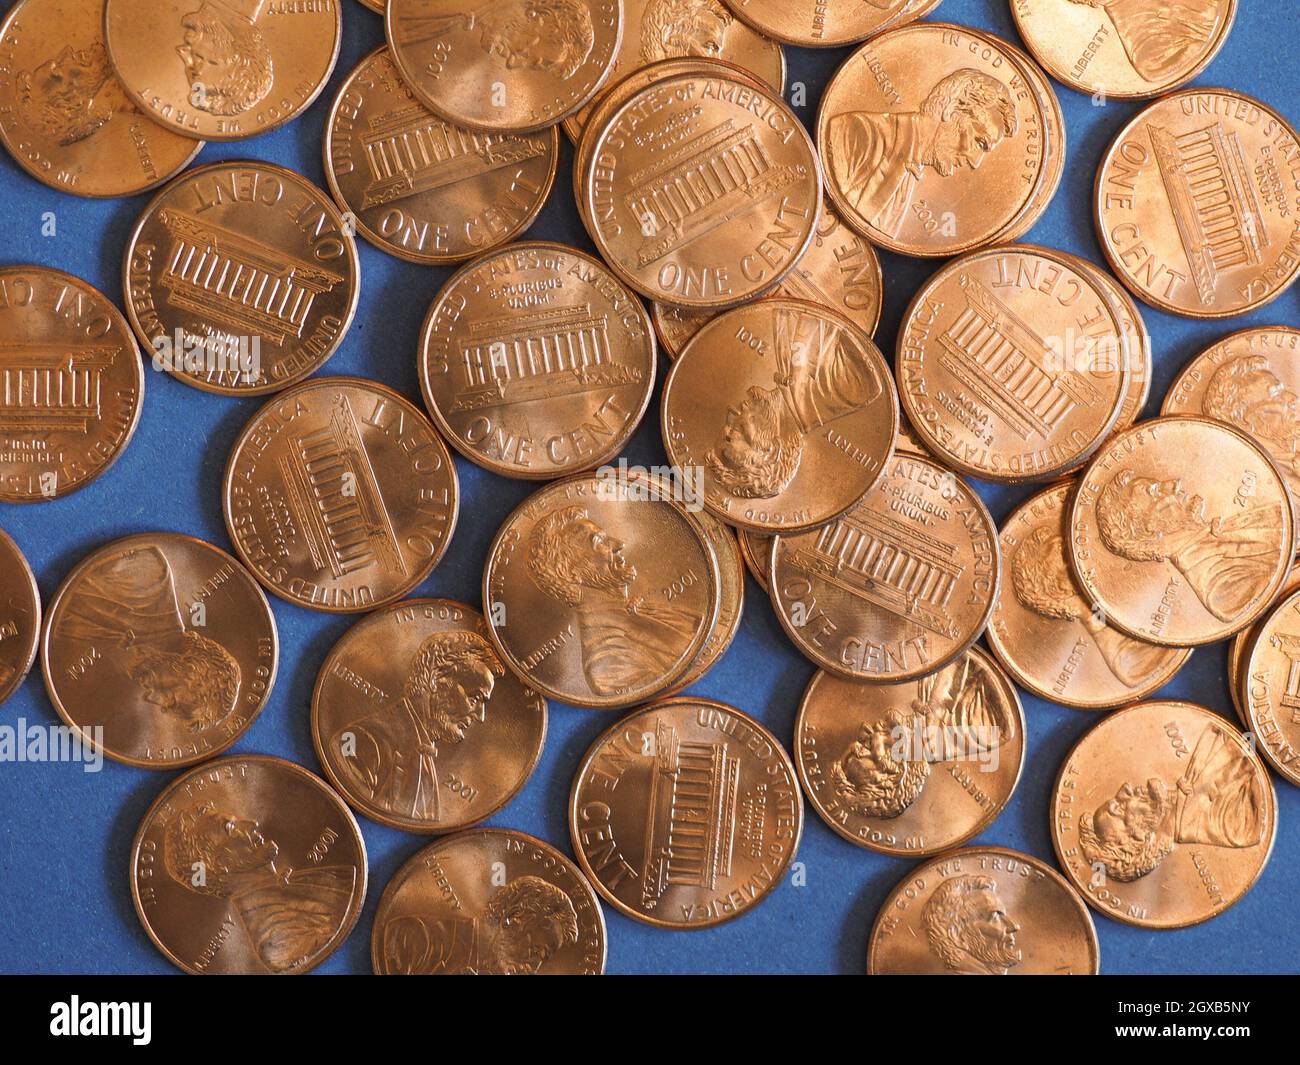 Moneda de un centavo en dólares (USD), moneda de los Estados Unidos sobre fondo azul. Foto de stock